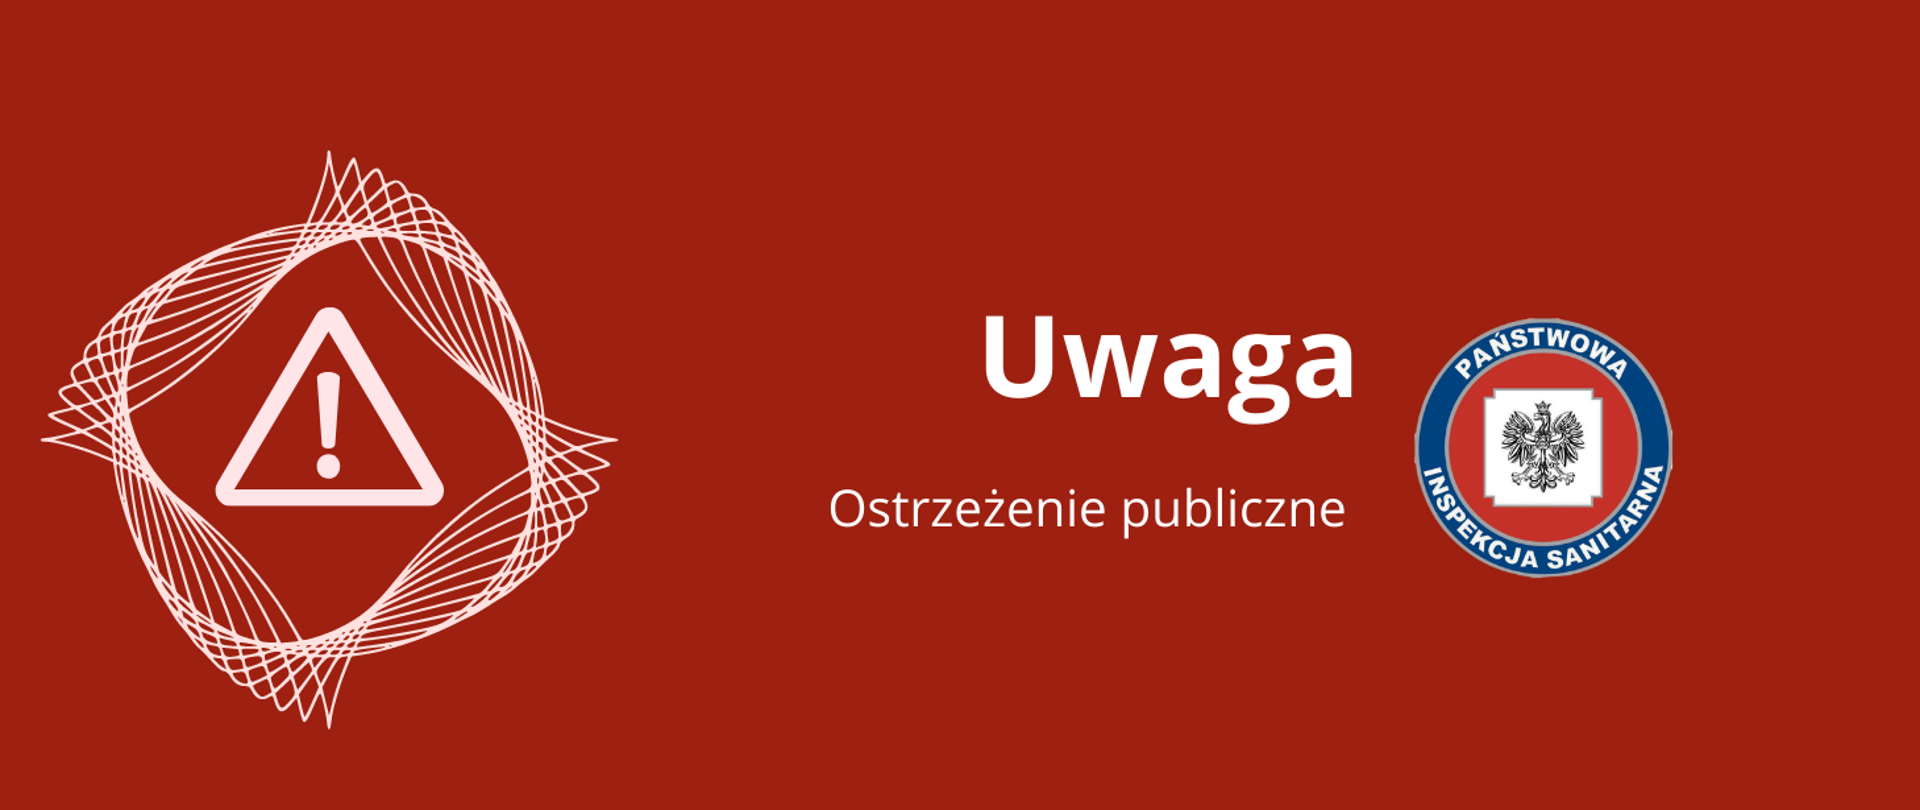 UWAGA_Ostrzeżenie_publiczne